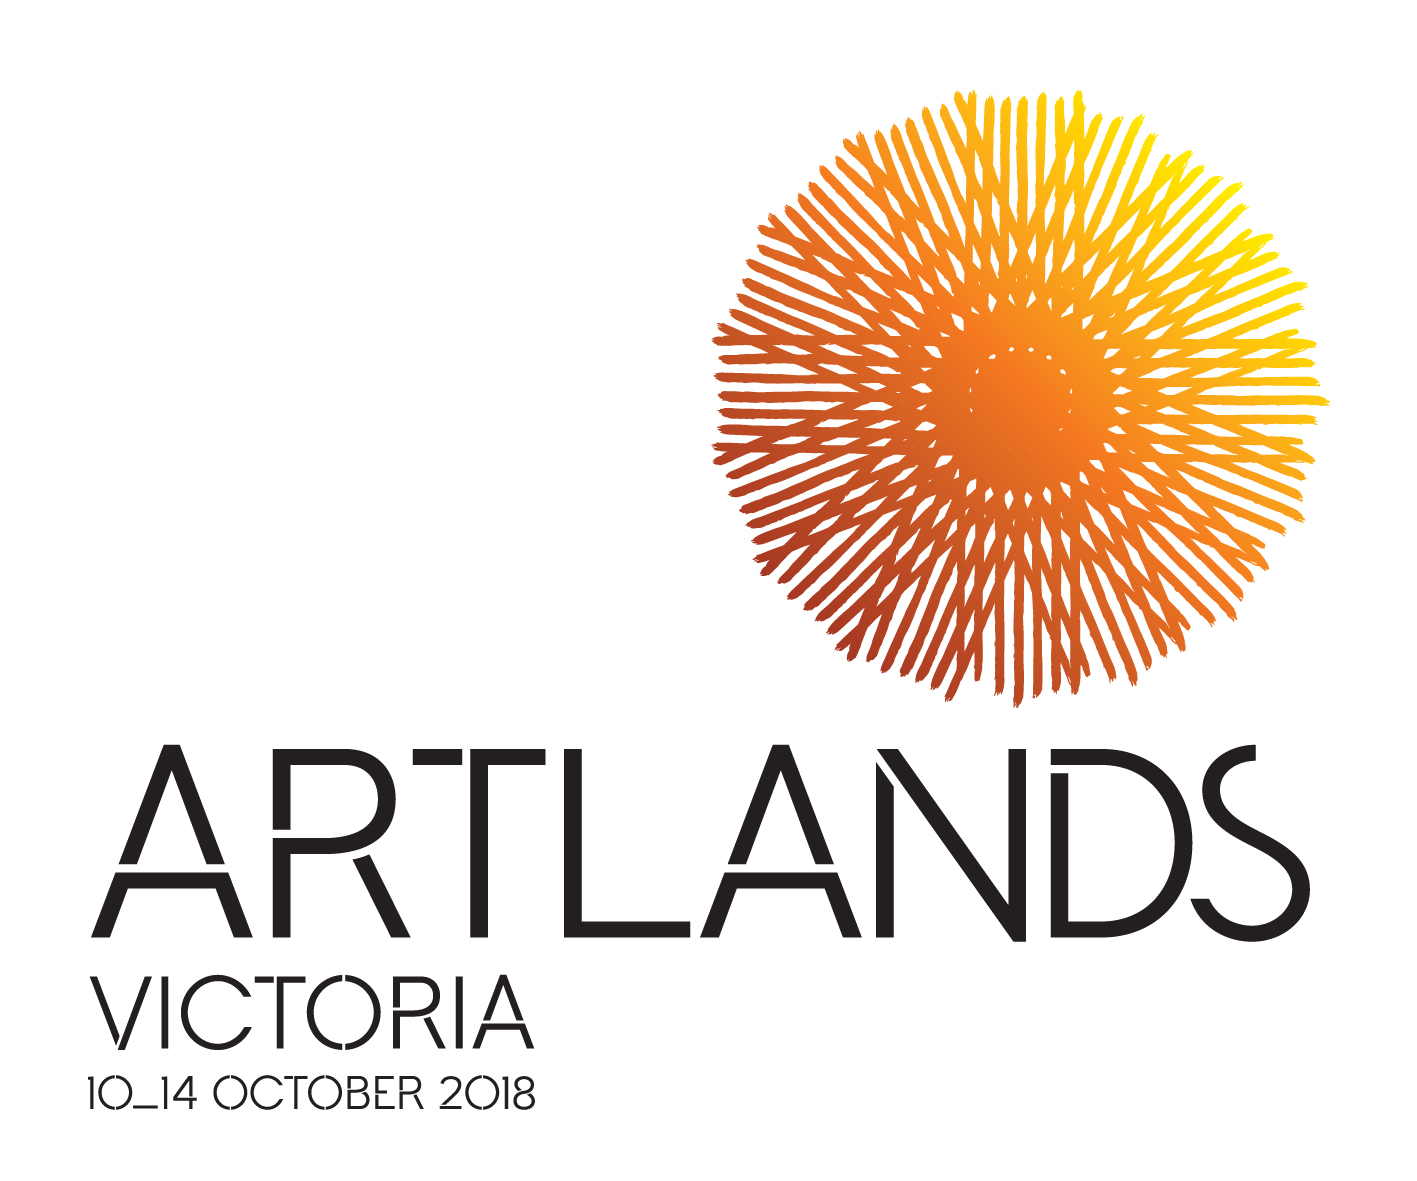 Excitement builds for Artlands Victoria